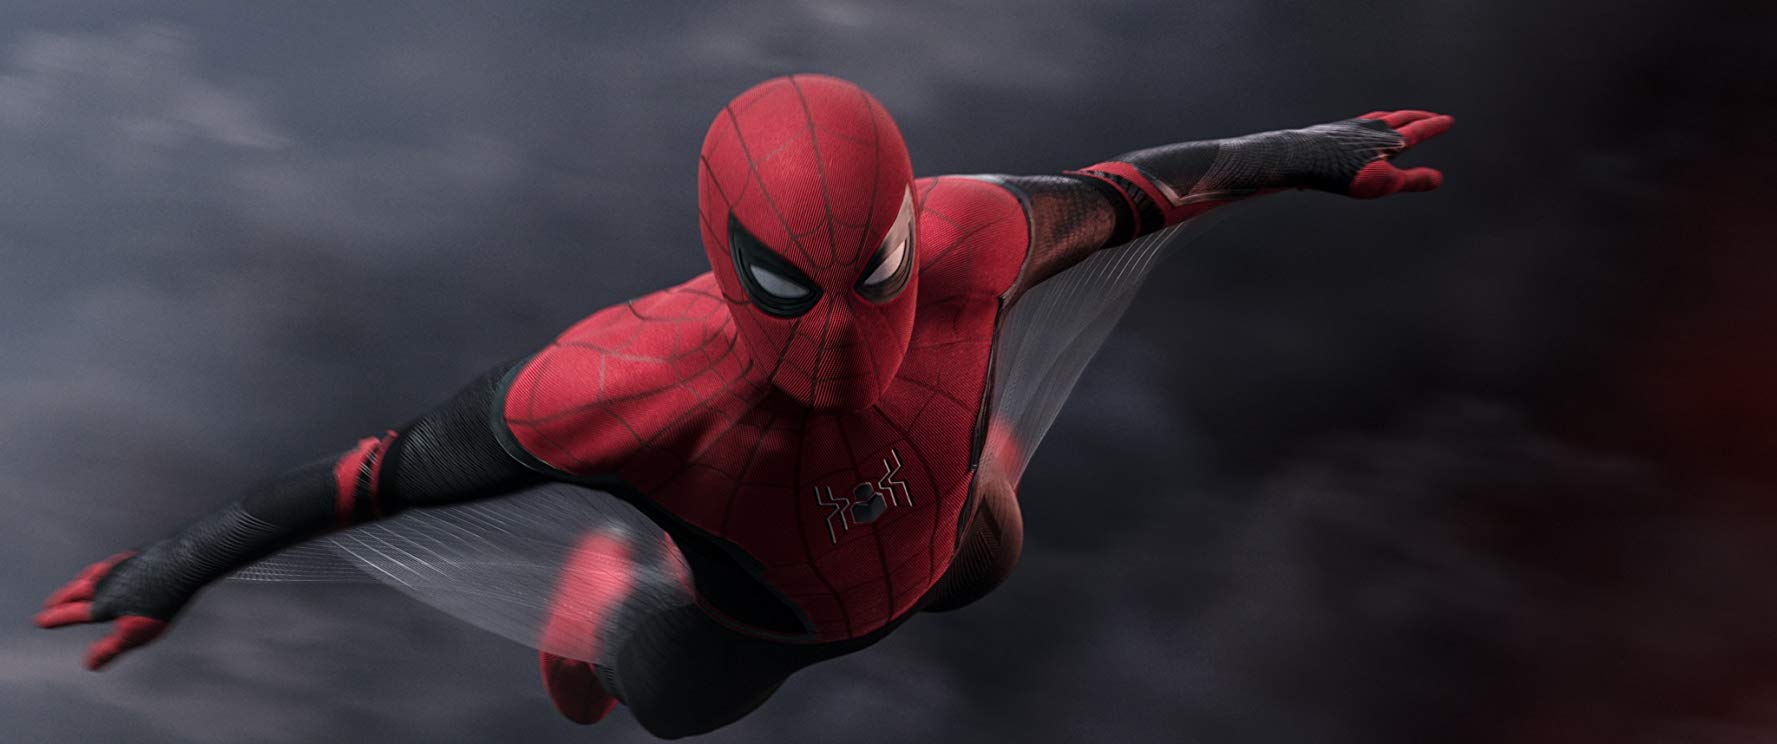 RESEÑA] Spider-Man: Lejos de Casa – Conflicto de identidad